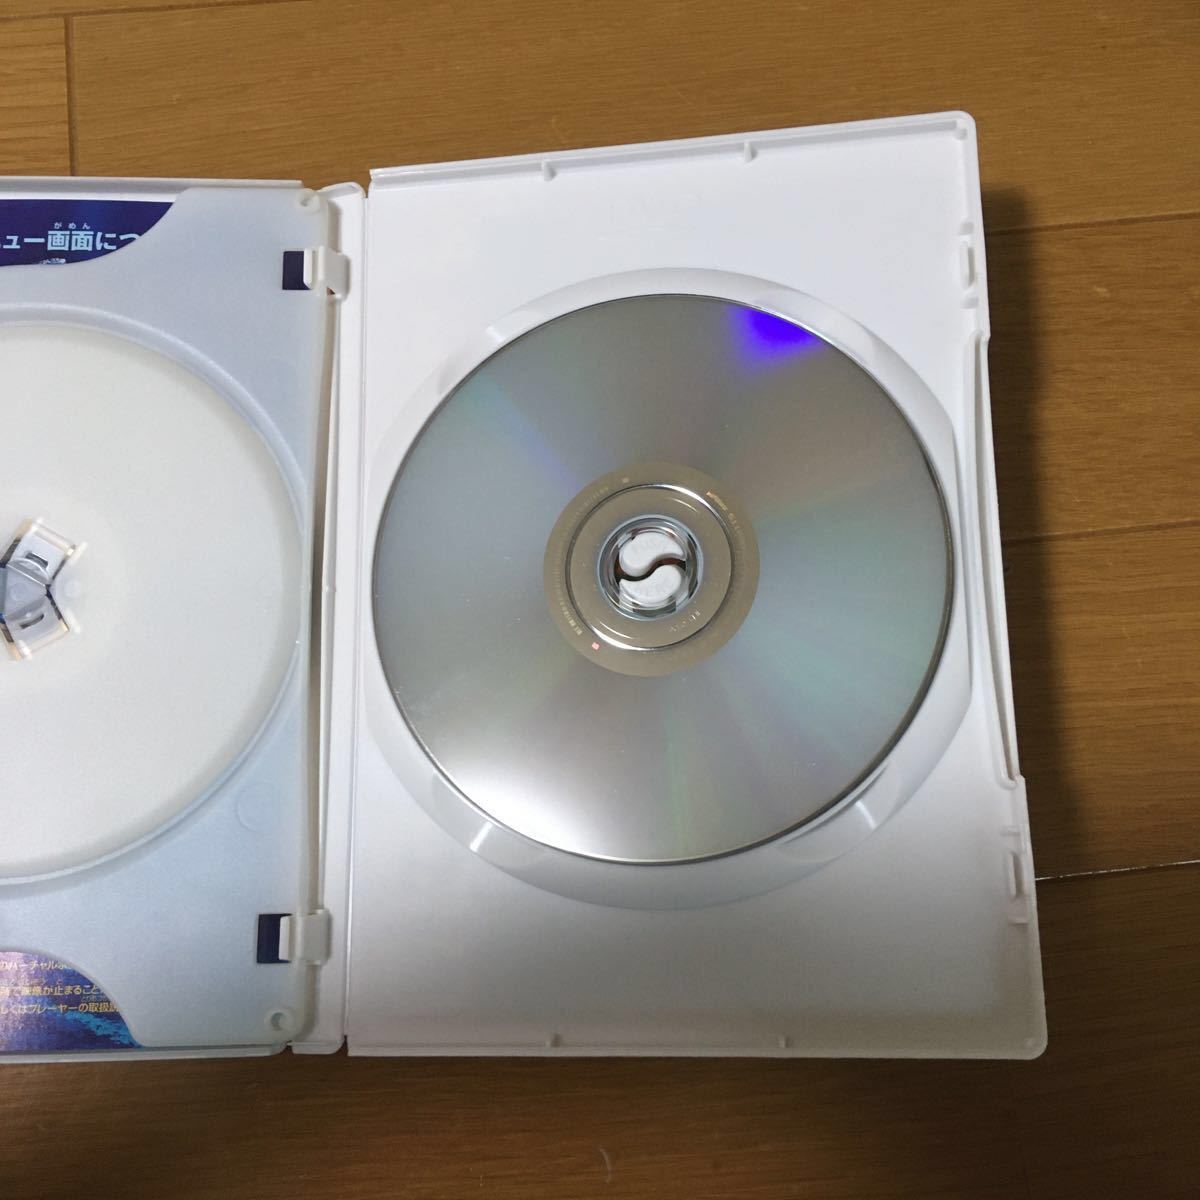   DVD ファインディングニモ ディズニー　ピクサー